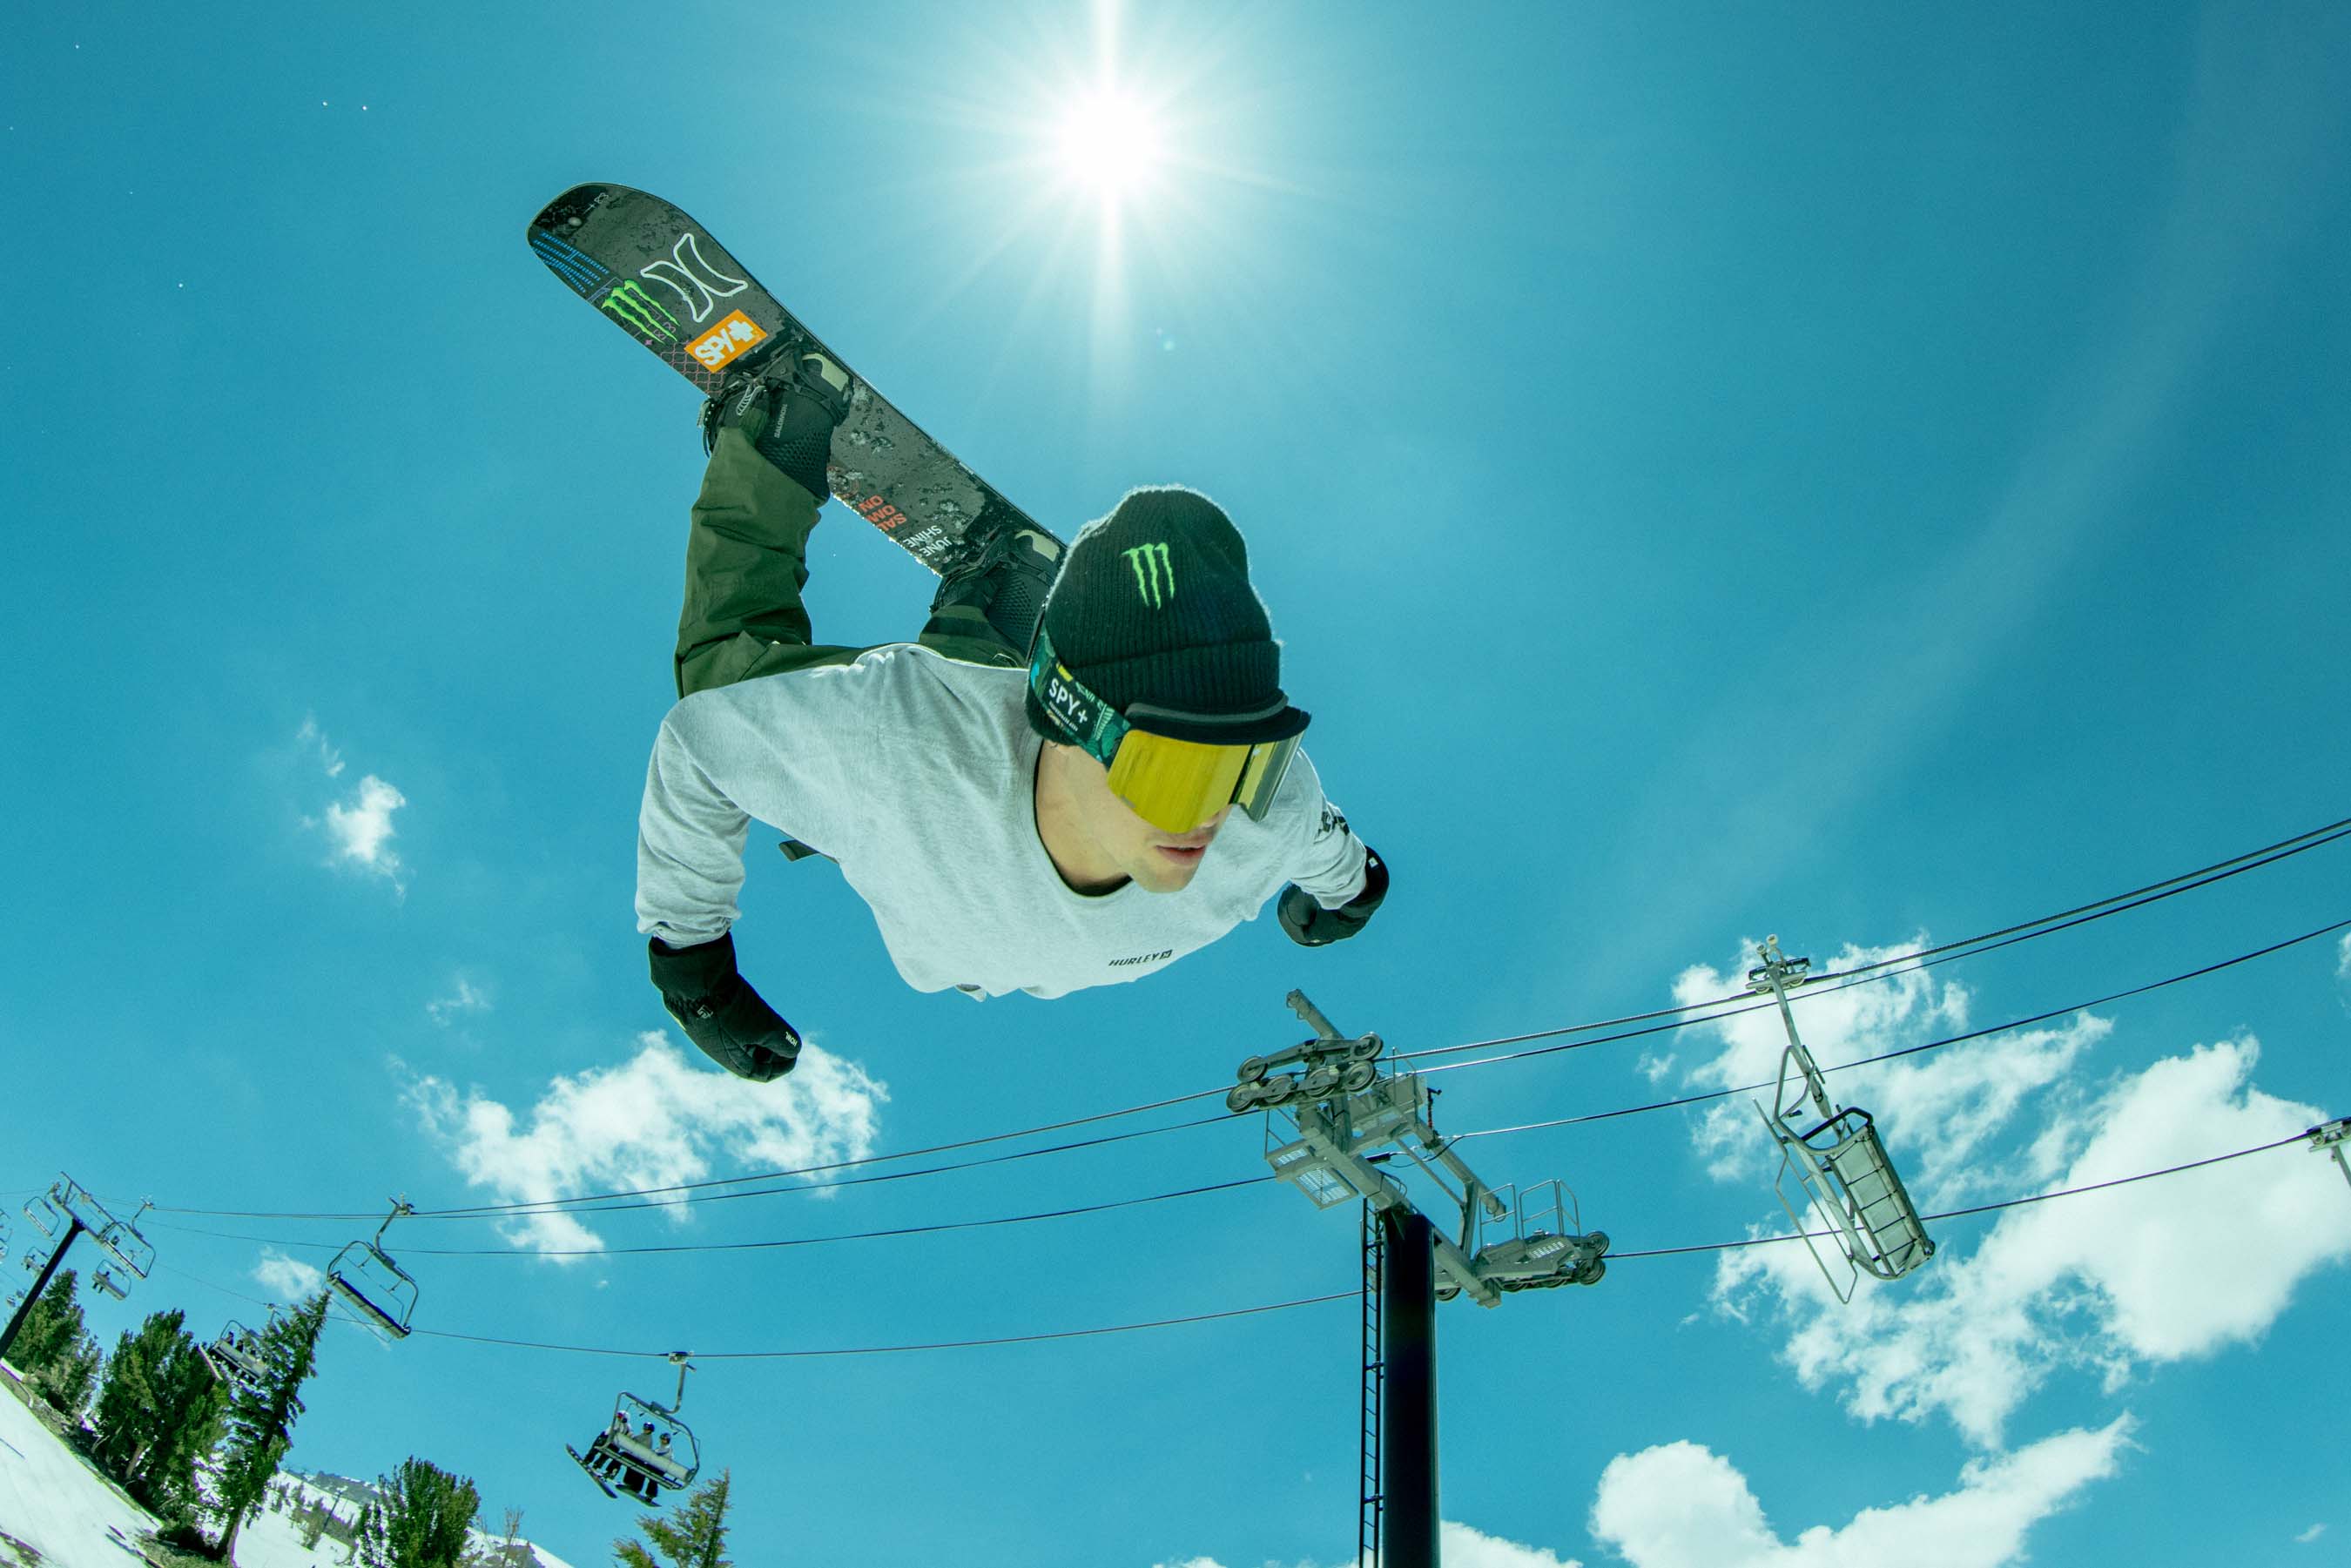 Zake Hale snowboard flip wearing the JuneShine Marauder SE Snow Goggle